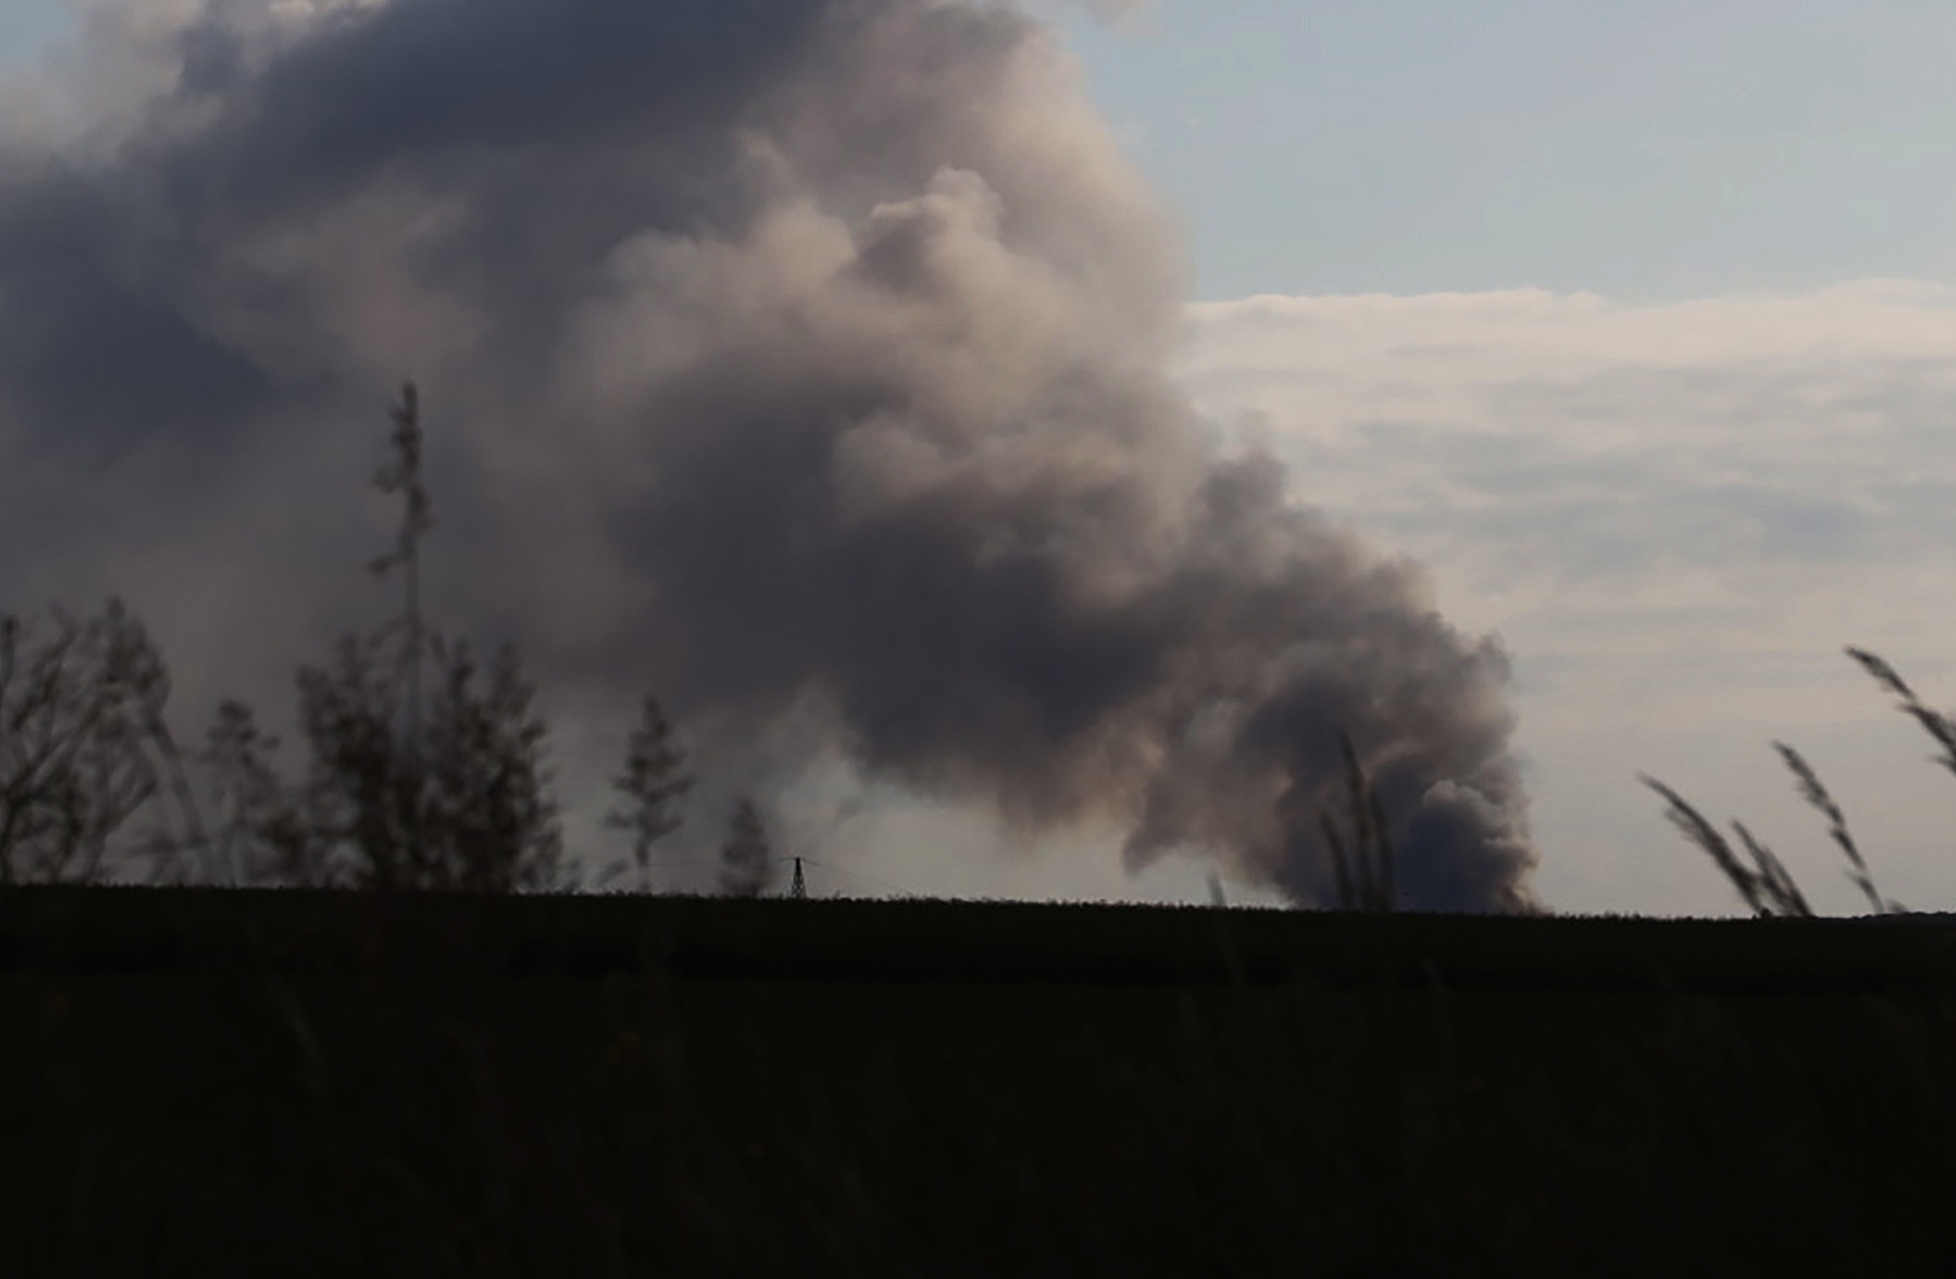 Der brennende Müllberg führte zu einer kilometerweit sichtbaren Rauchwolke (Symbolbild).